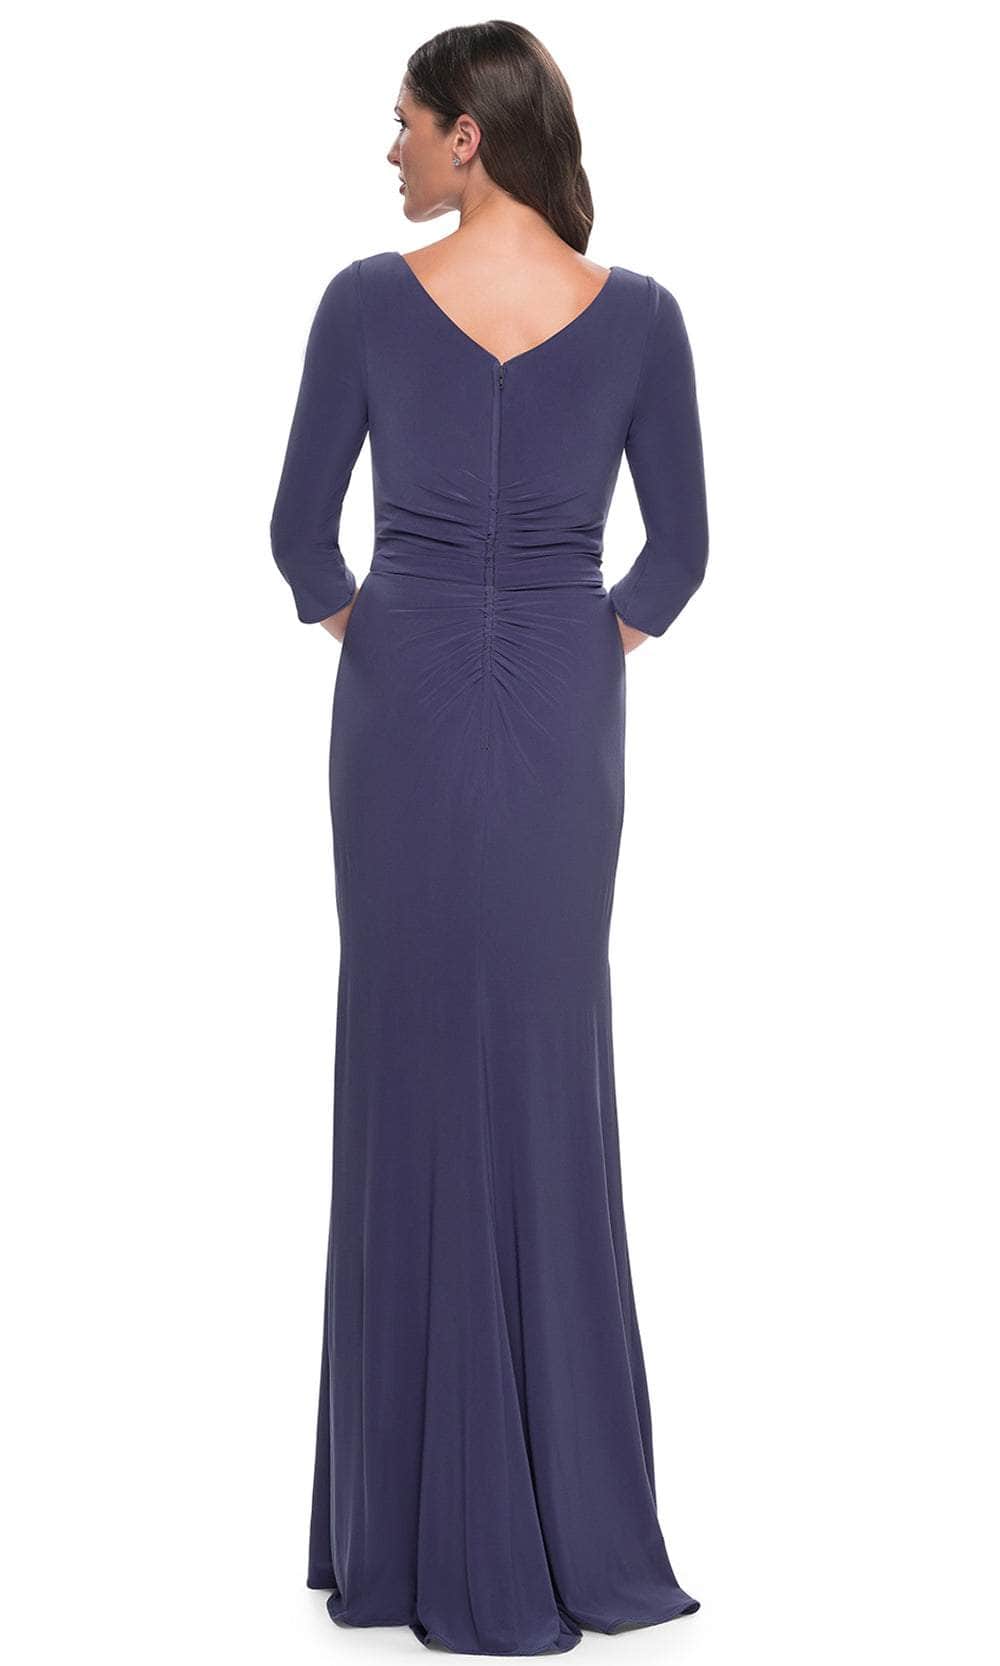 La Femme 30814 - Quarter Sleeve Jersey Evening Dress Mother of the Bride Dresses